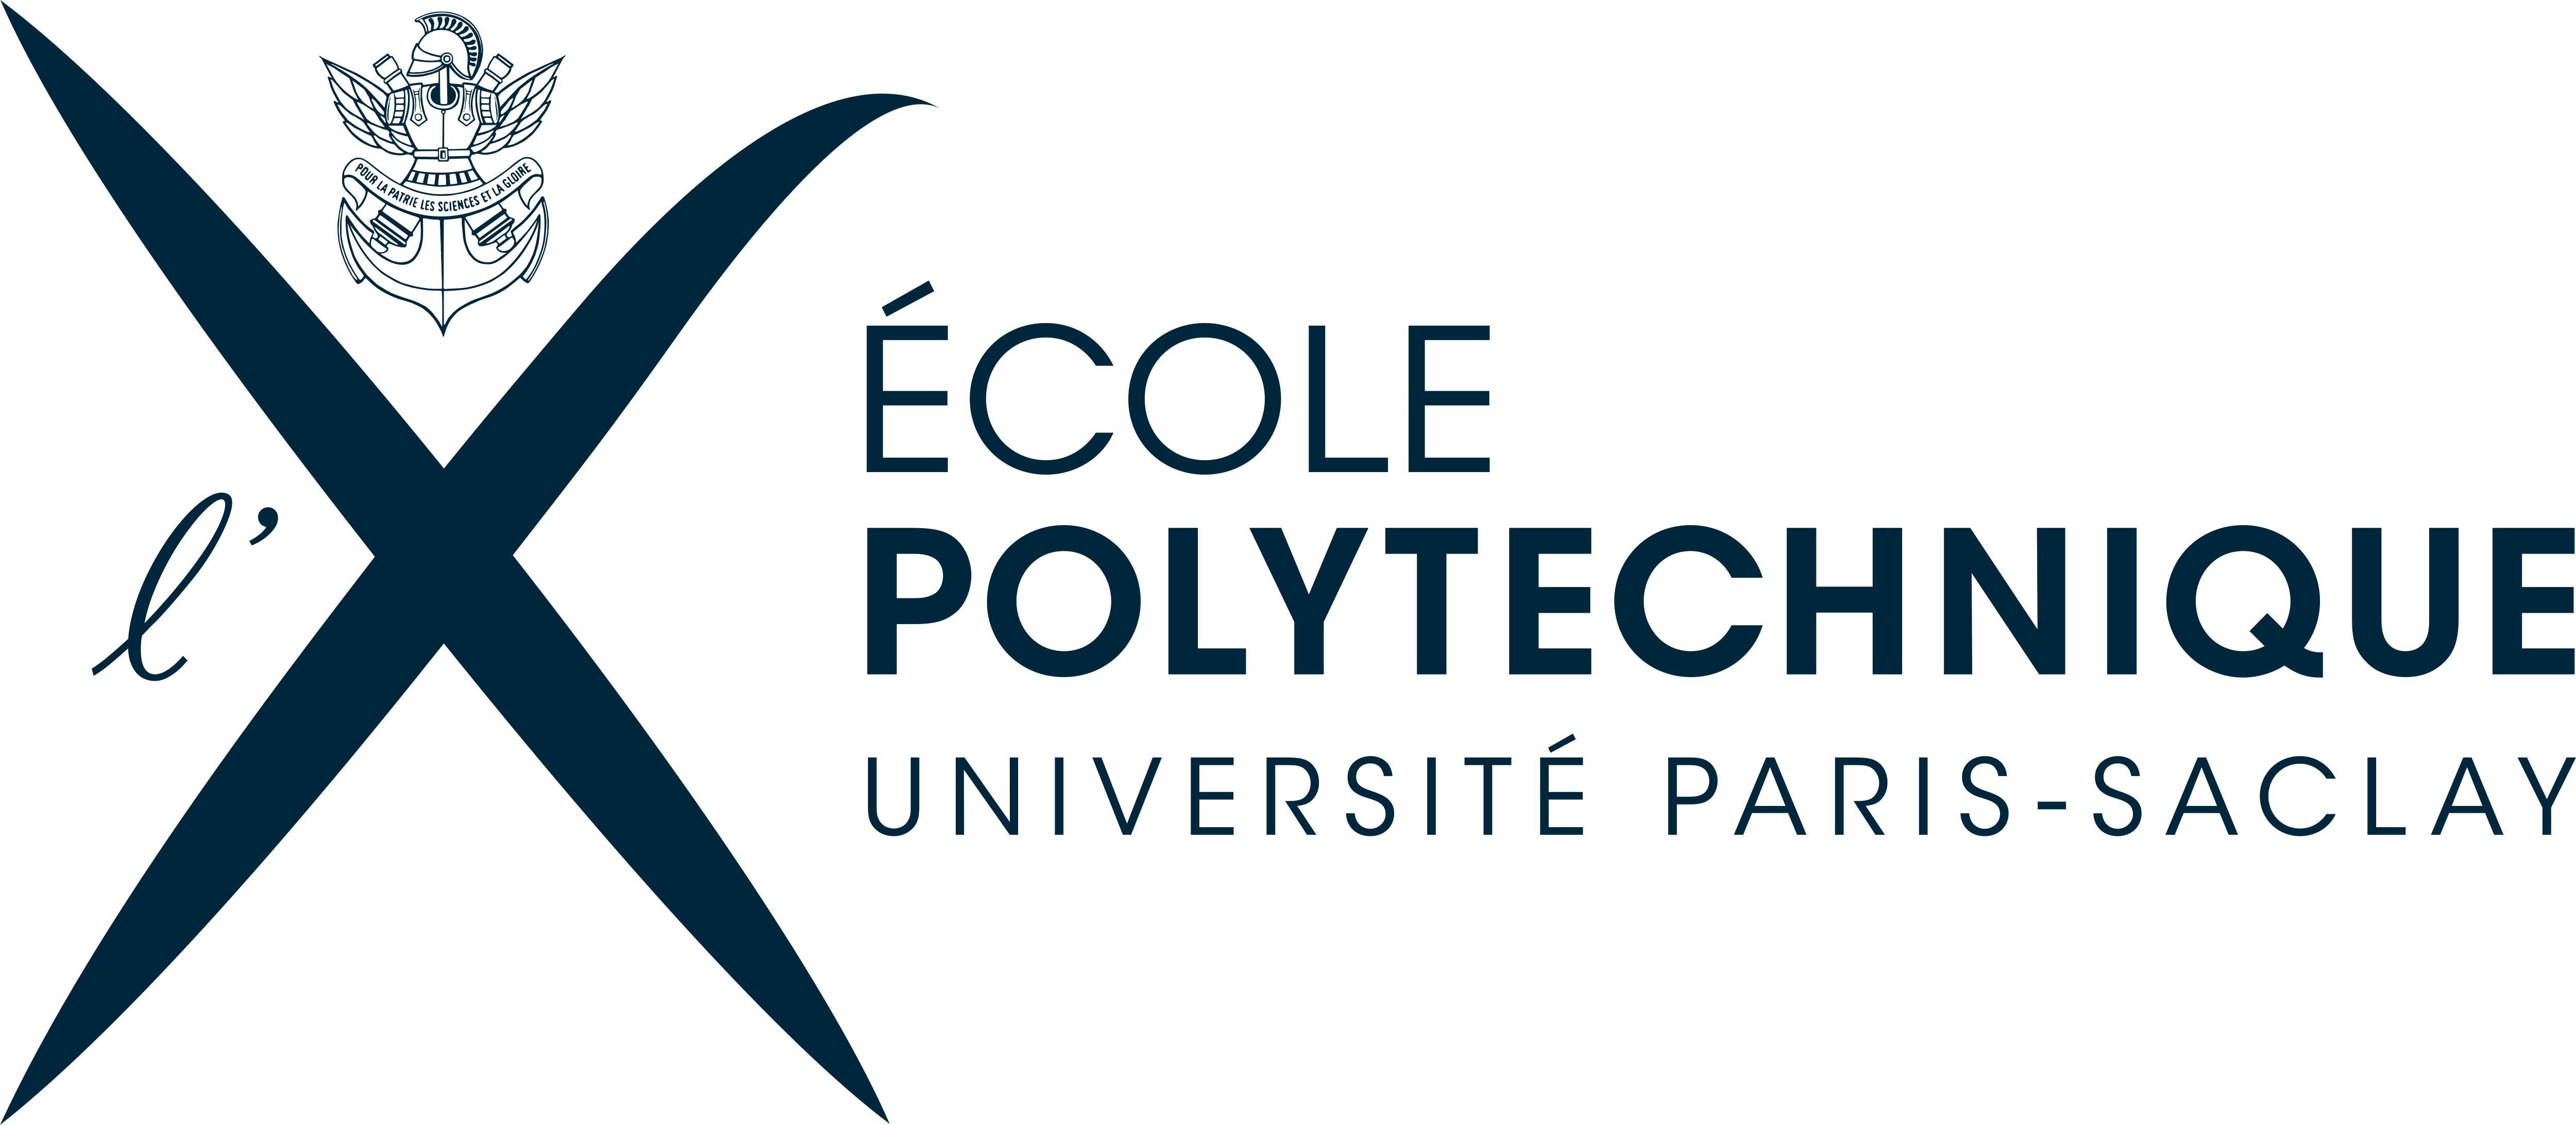 Resultado de imagem para école polytechnique logo